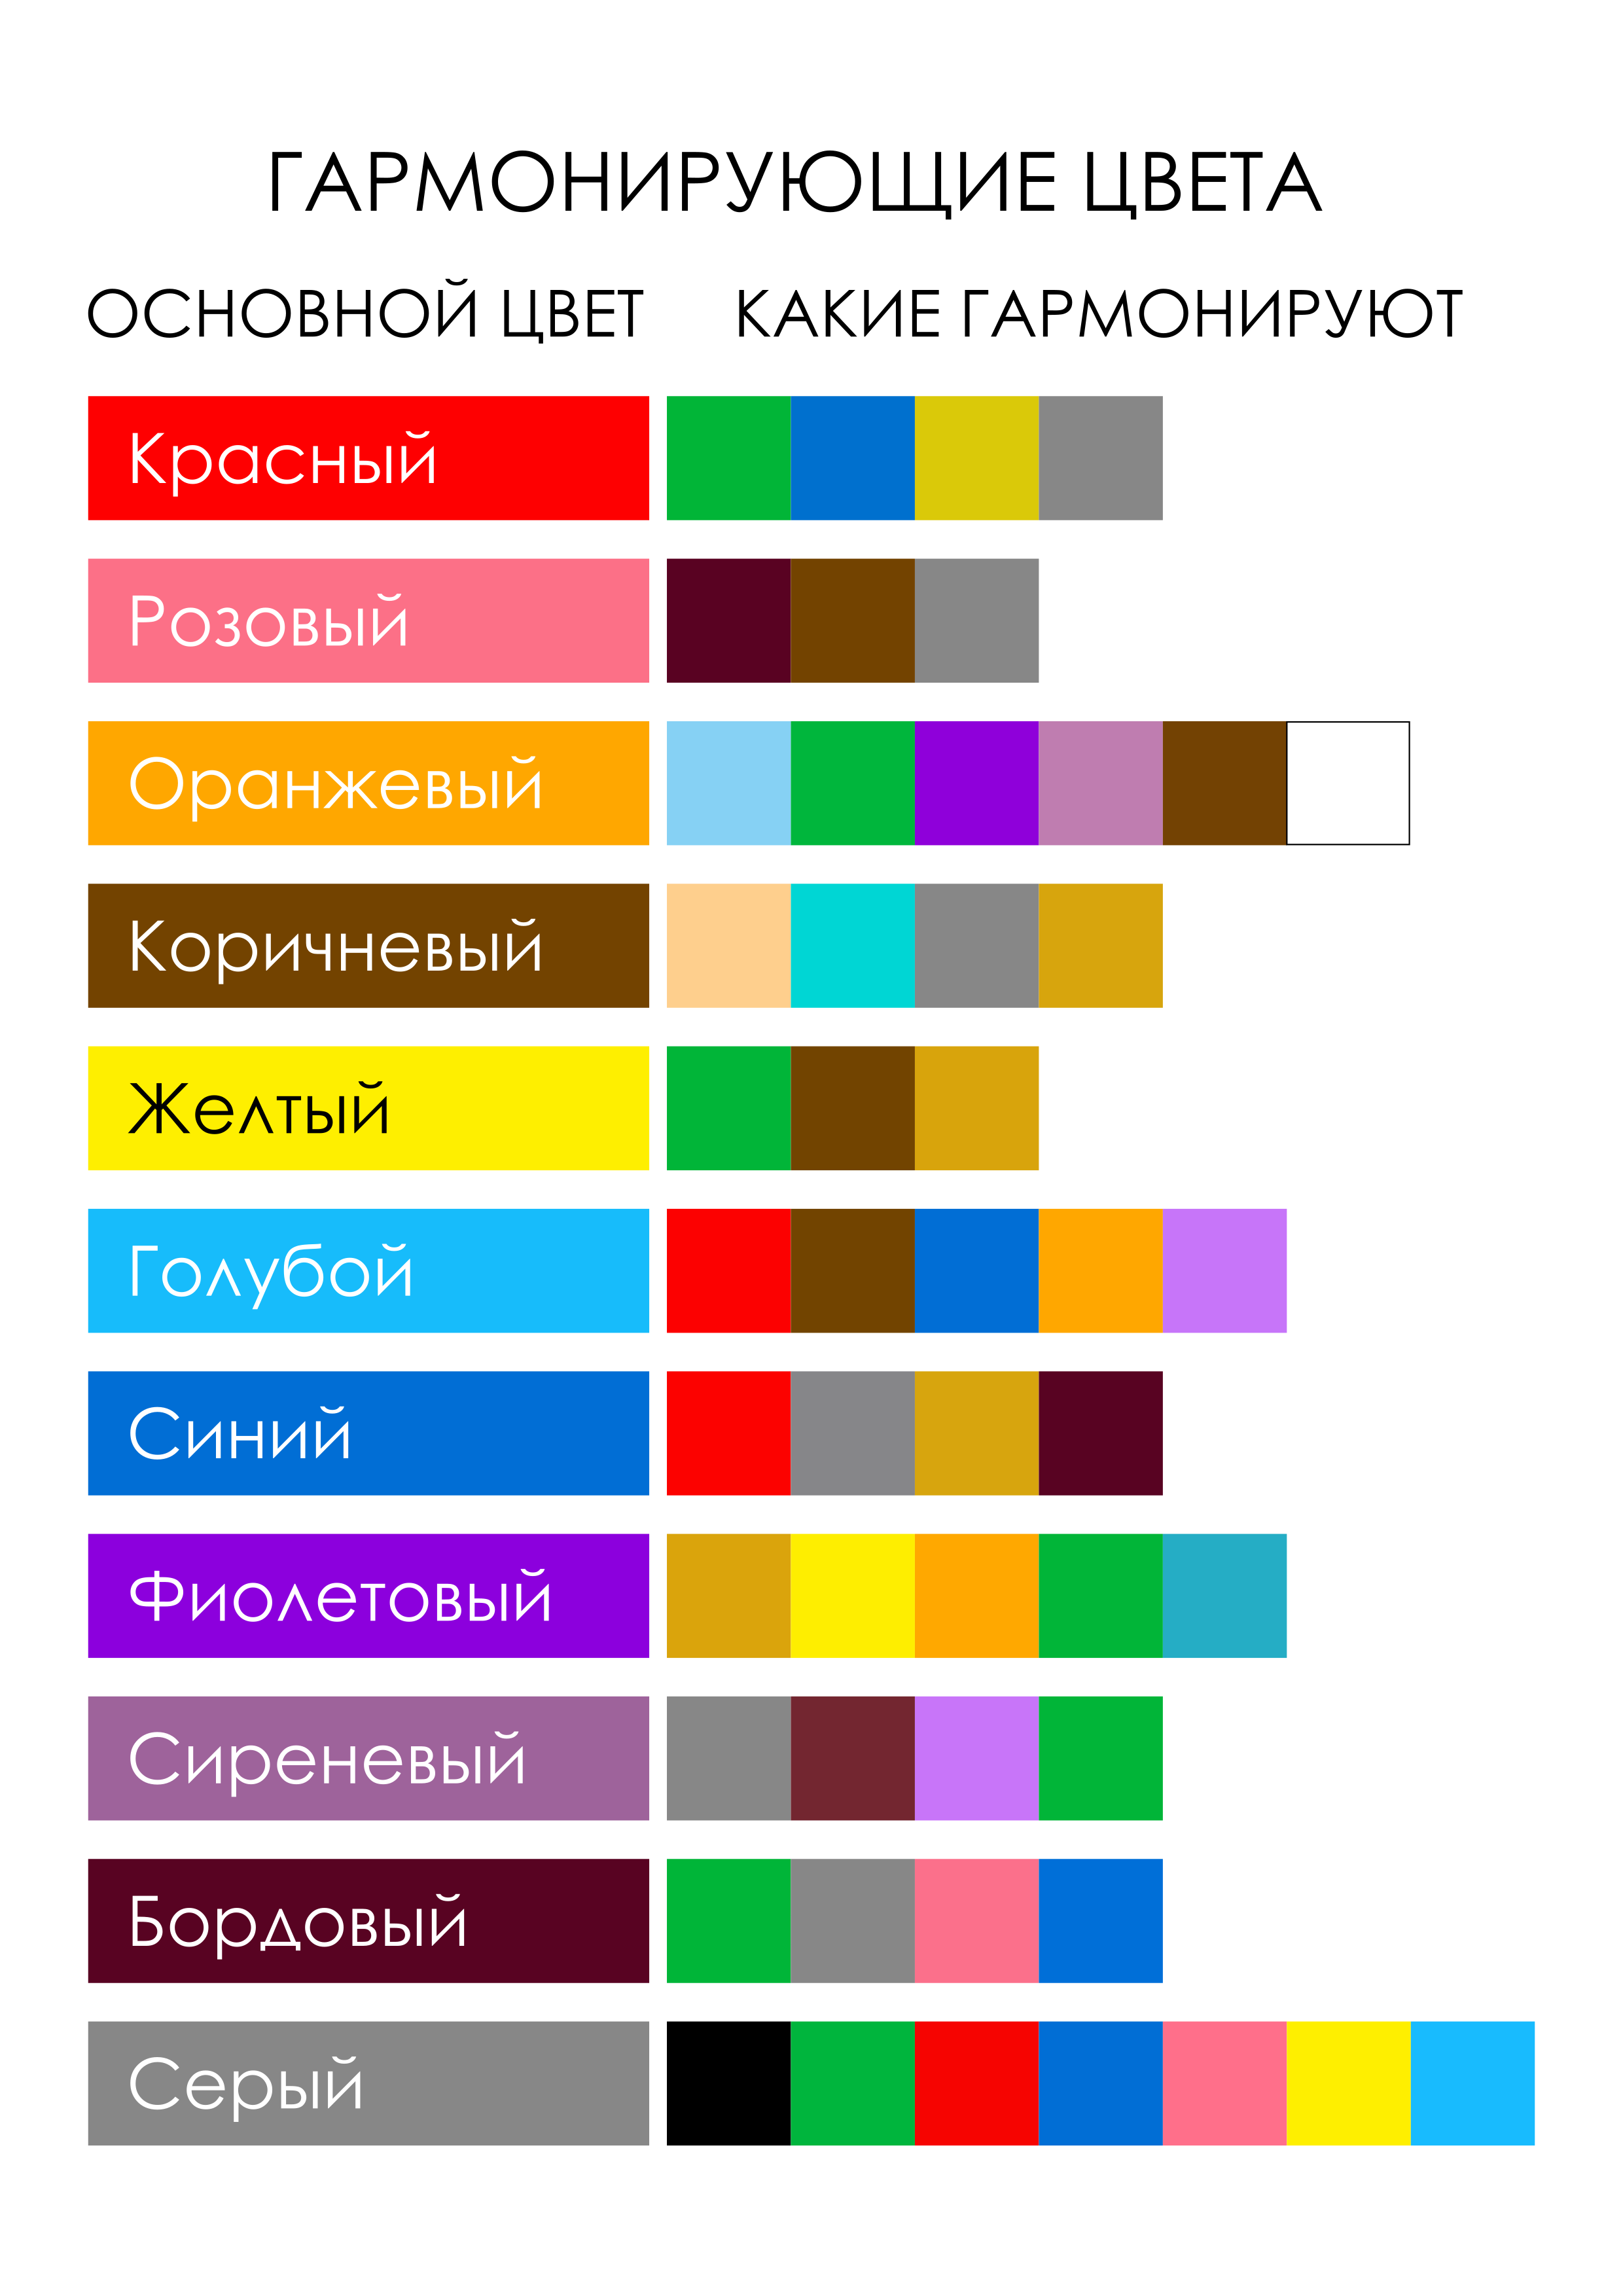 Сочетание цветов в одежде для женщин таблица фото на русском языке